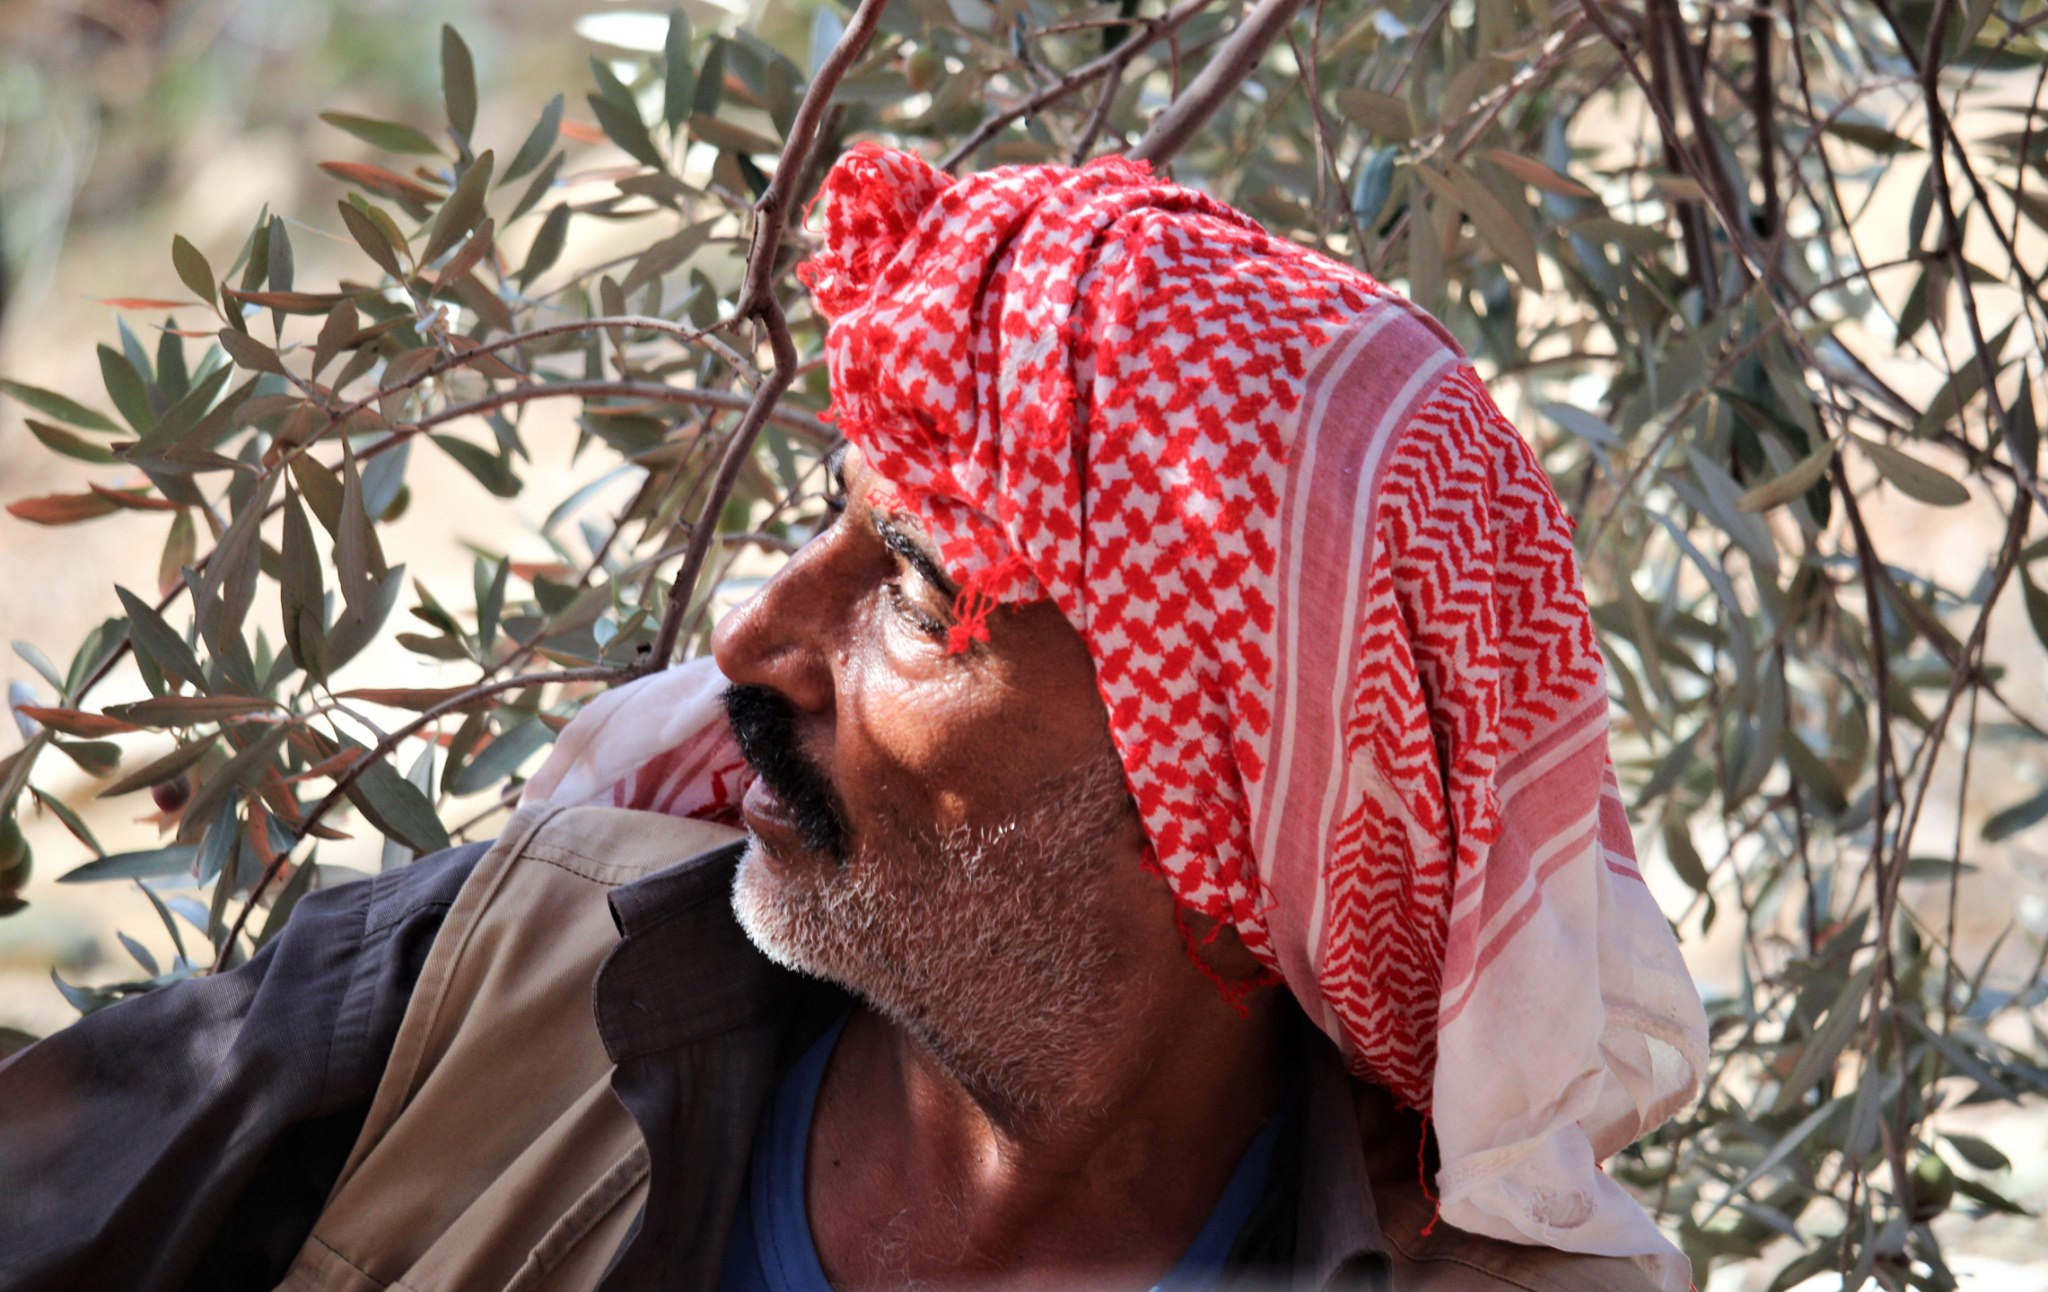 Olive harvest in Jordan